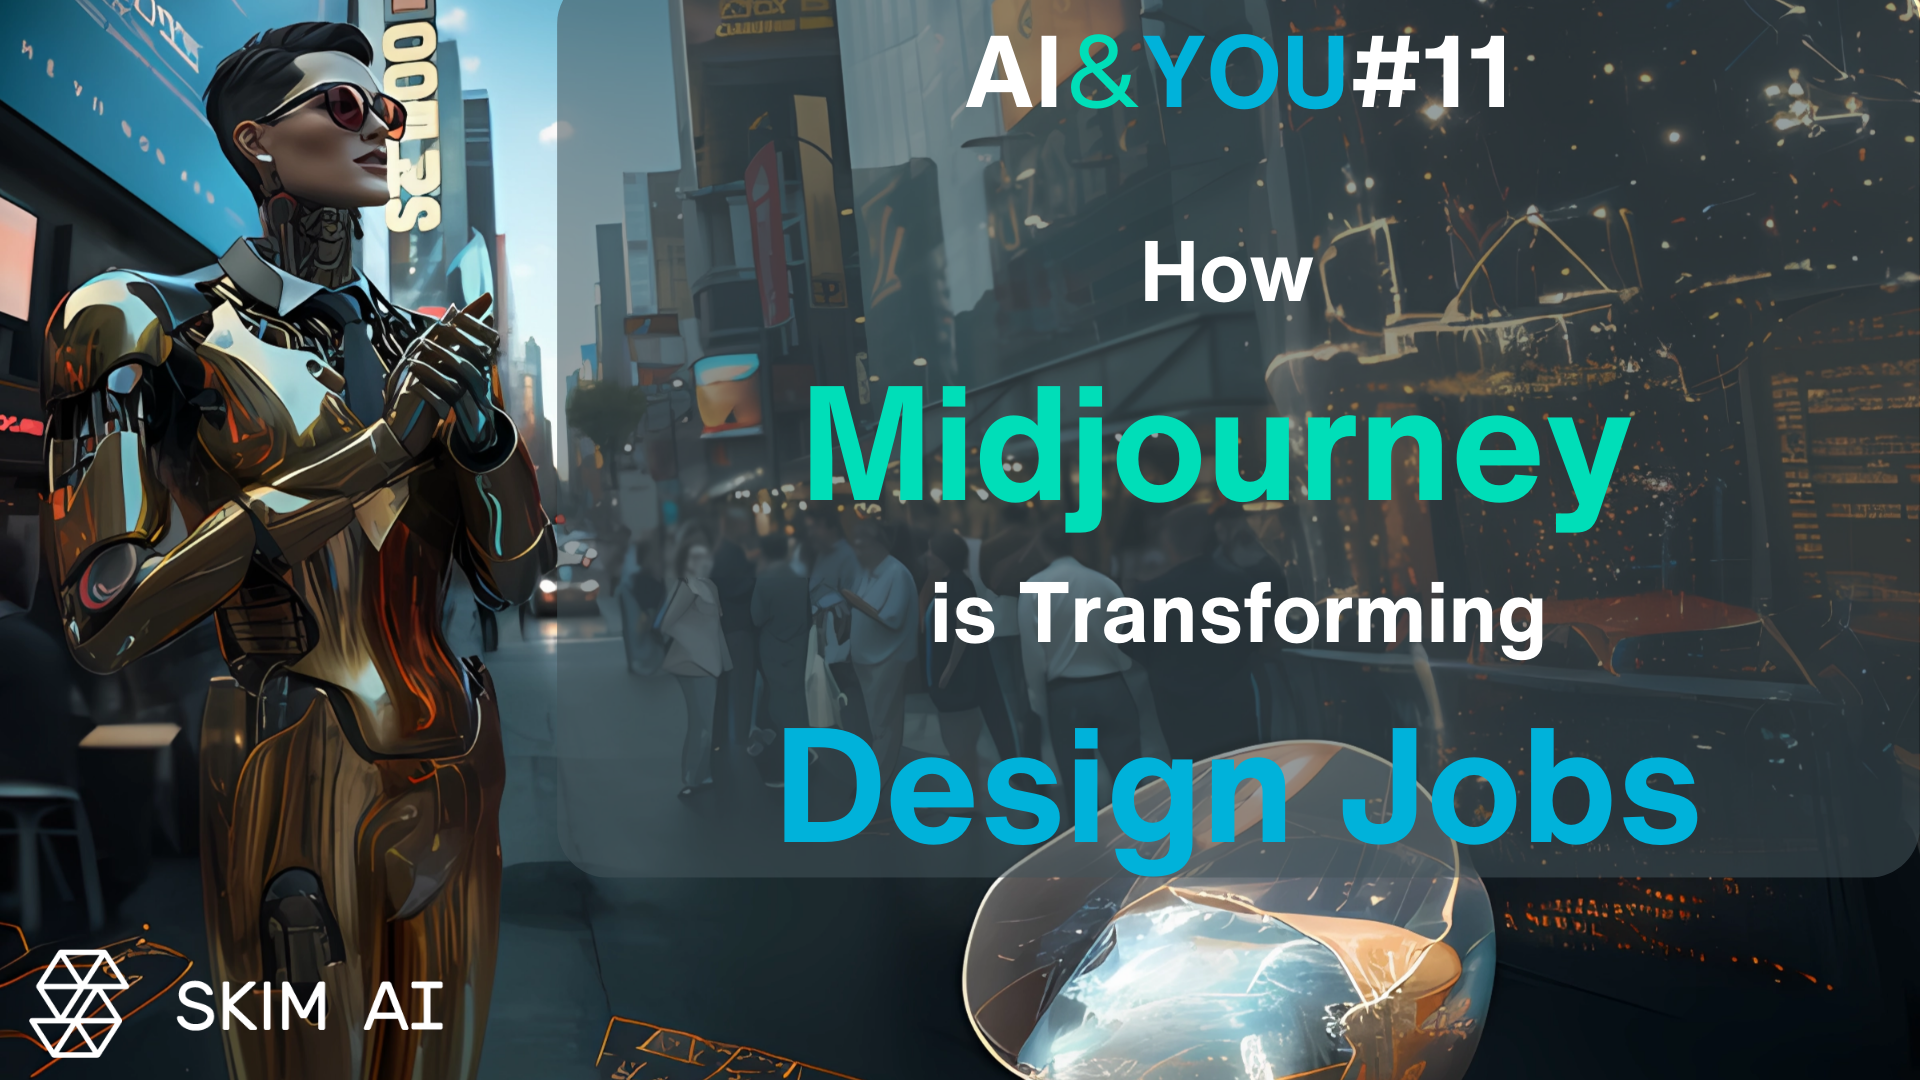 AI & YOU #11: Як Midjourney трансформує роботу в дизайні